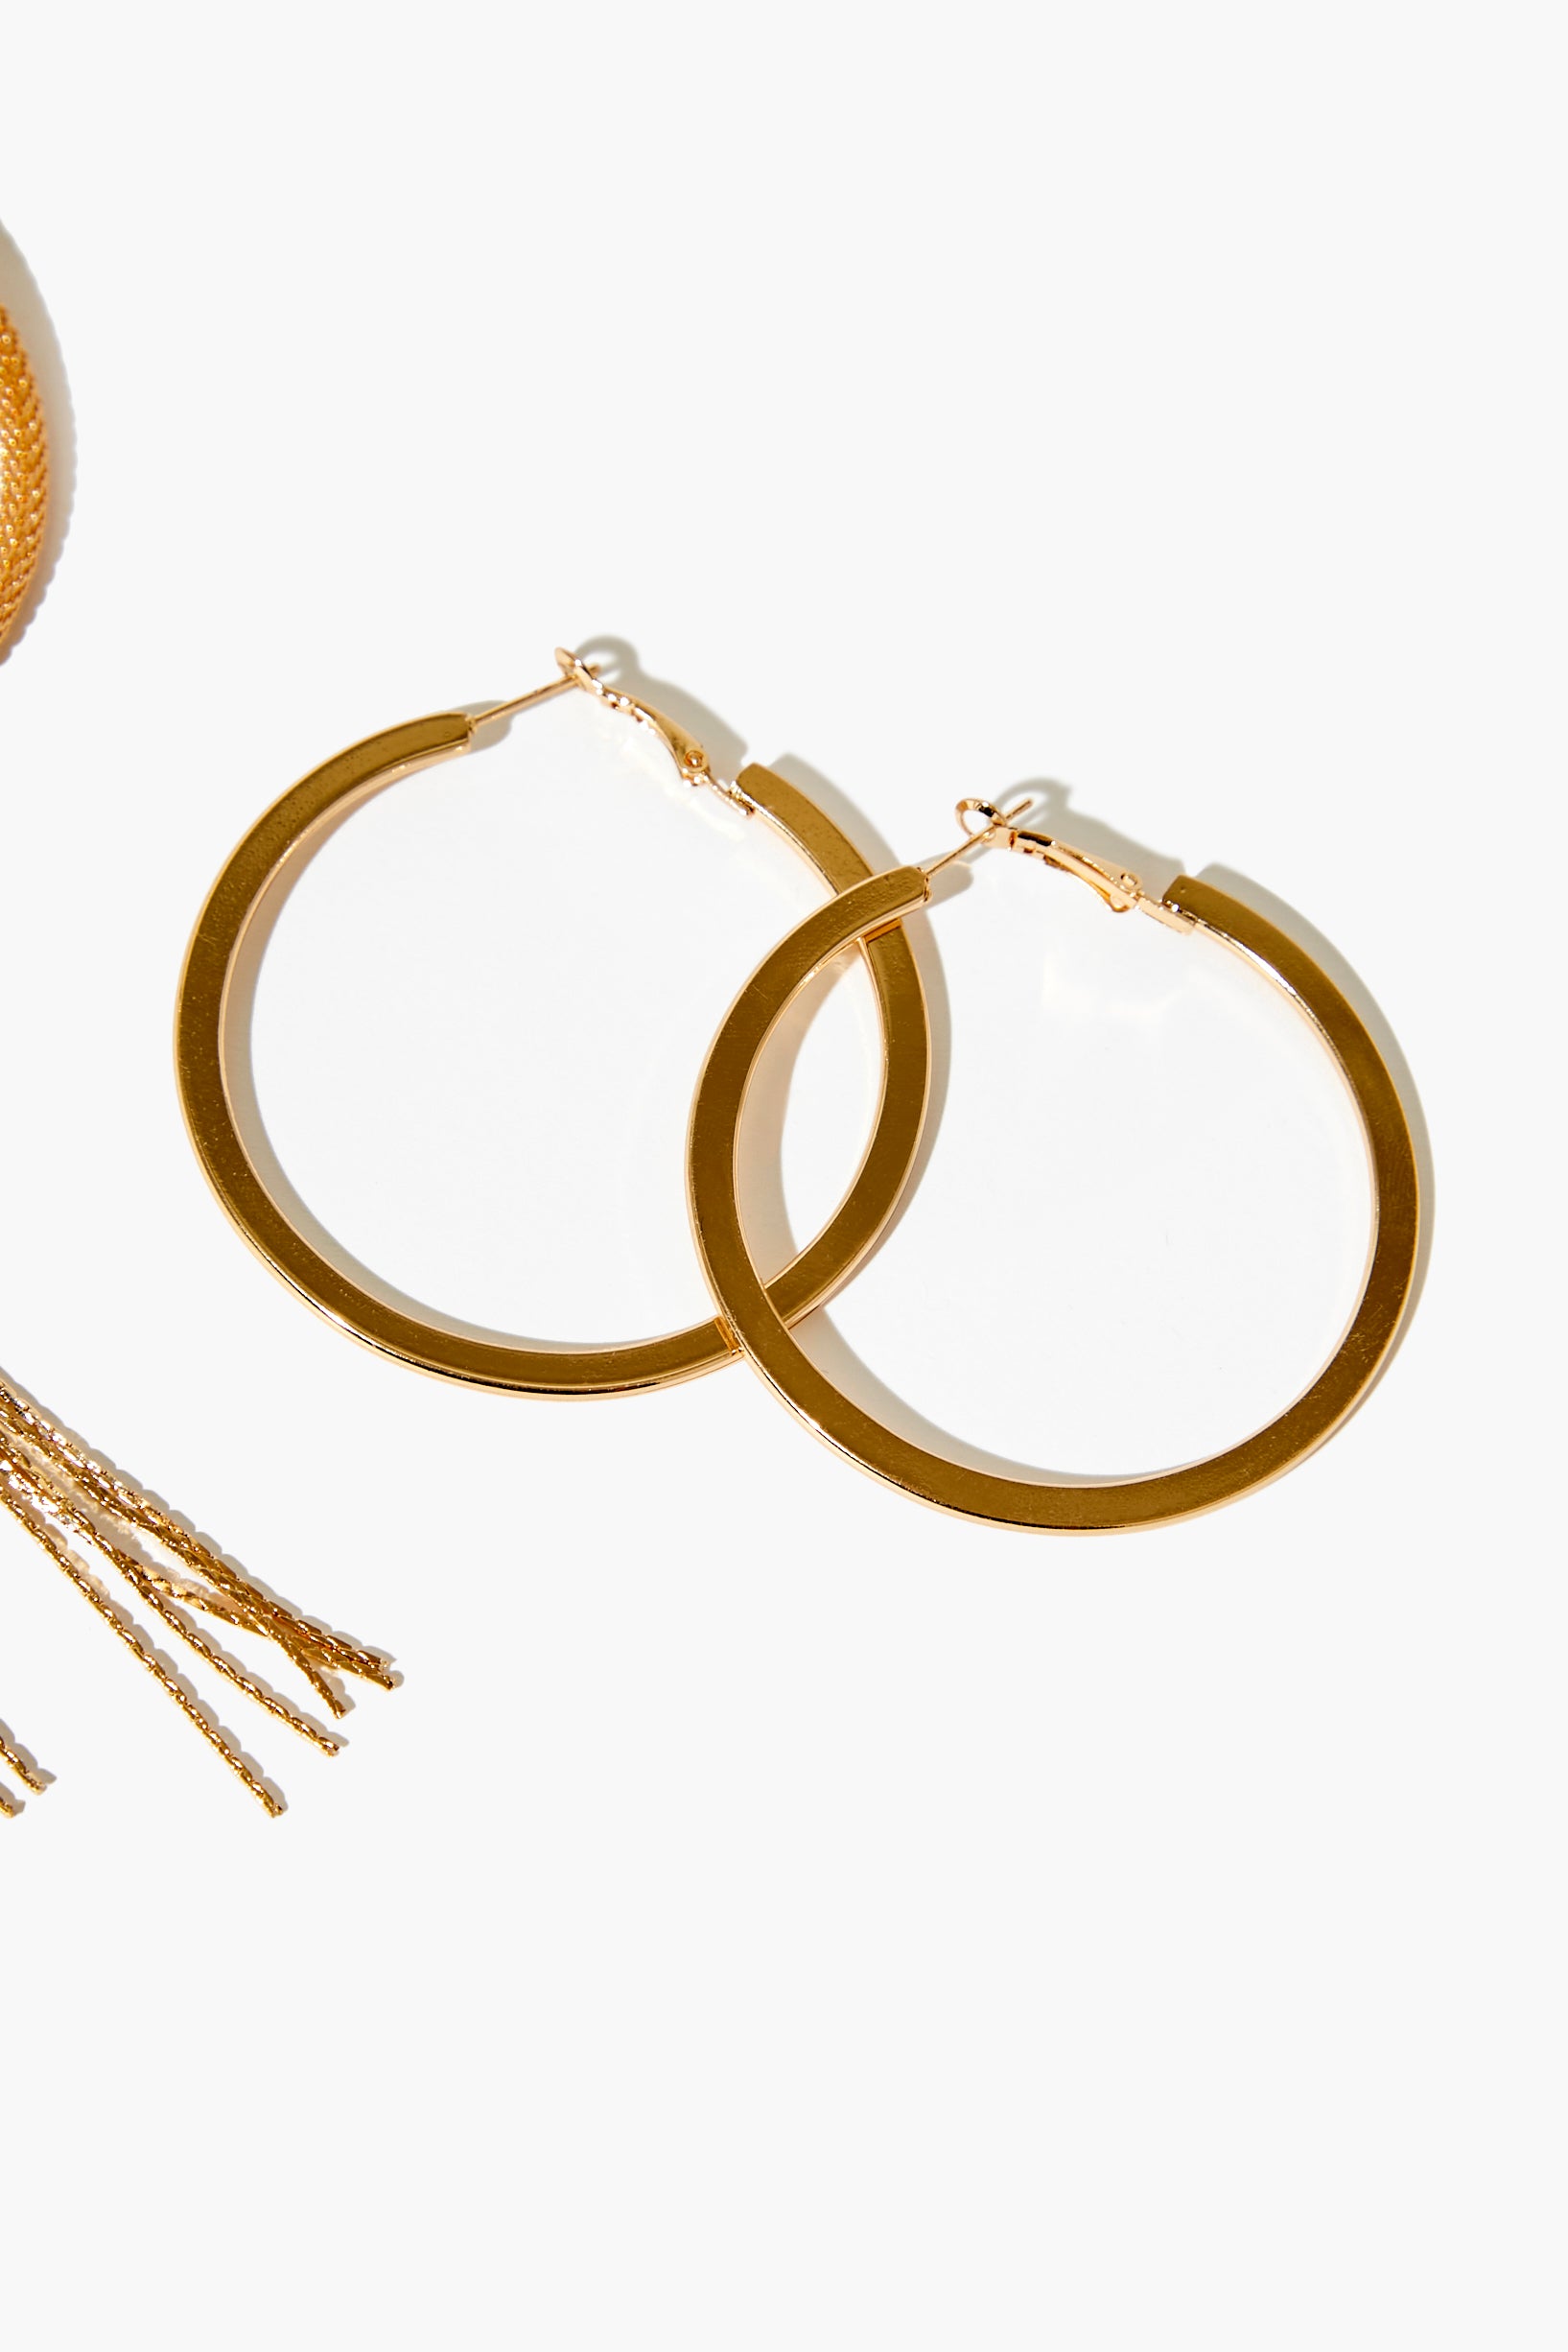 Gold Braided Hoop Earring Set 3